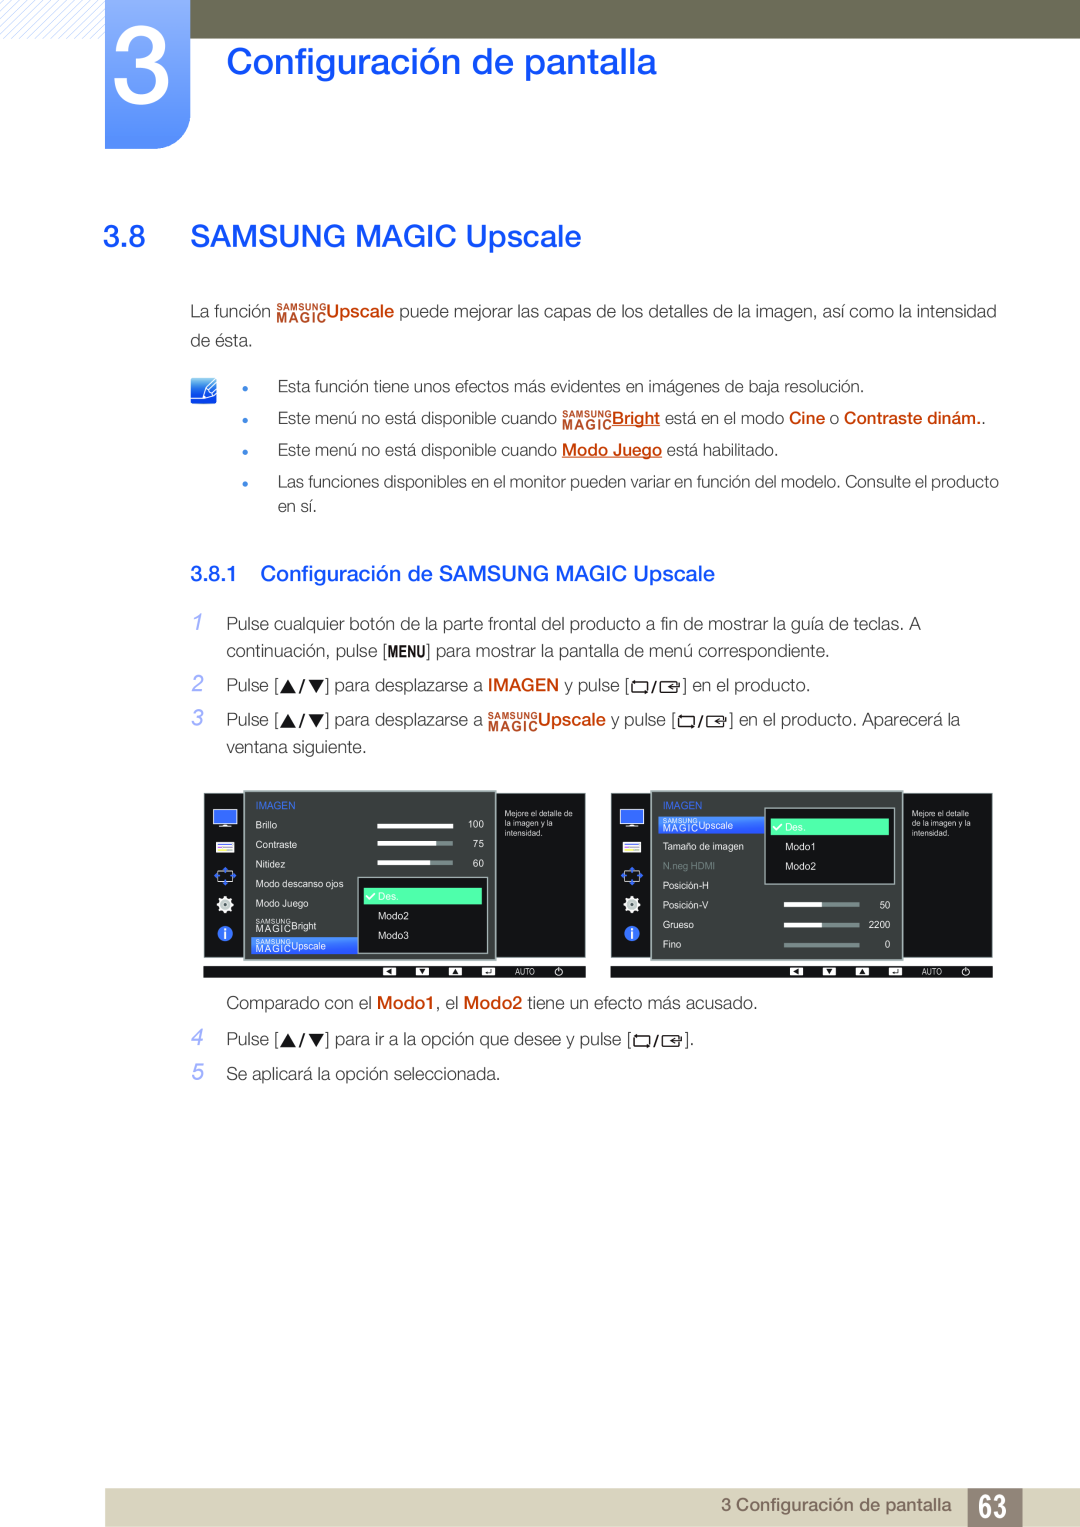 Samsung LS22E65UDS/EN, LS24E65UPL/EN, LS27E45KBS/EN Configuración de SAMSUNG MAGIC Upscale, Configuración de pantalla 